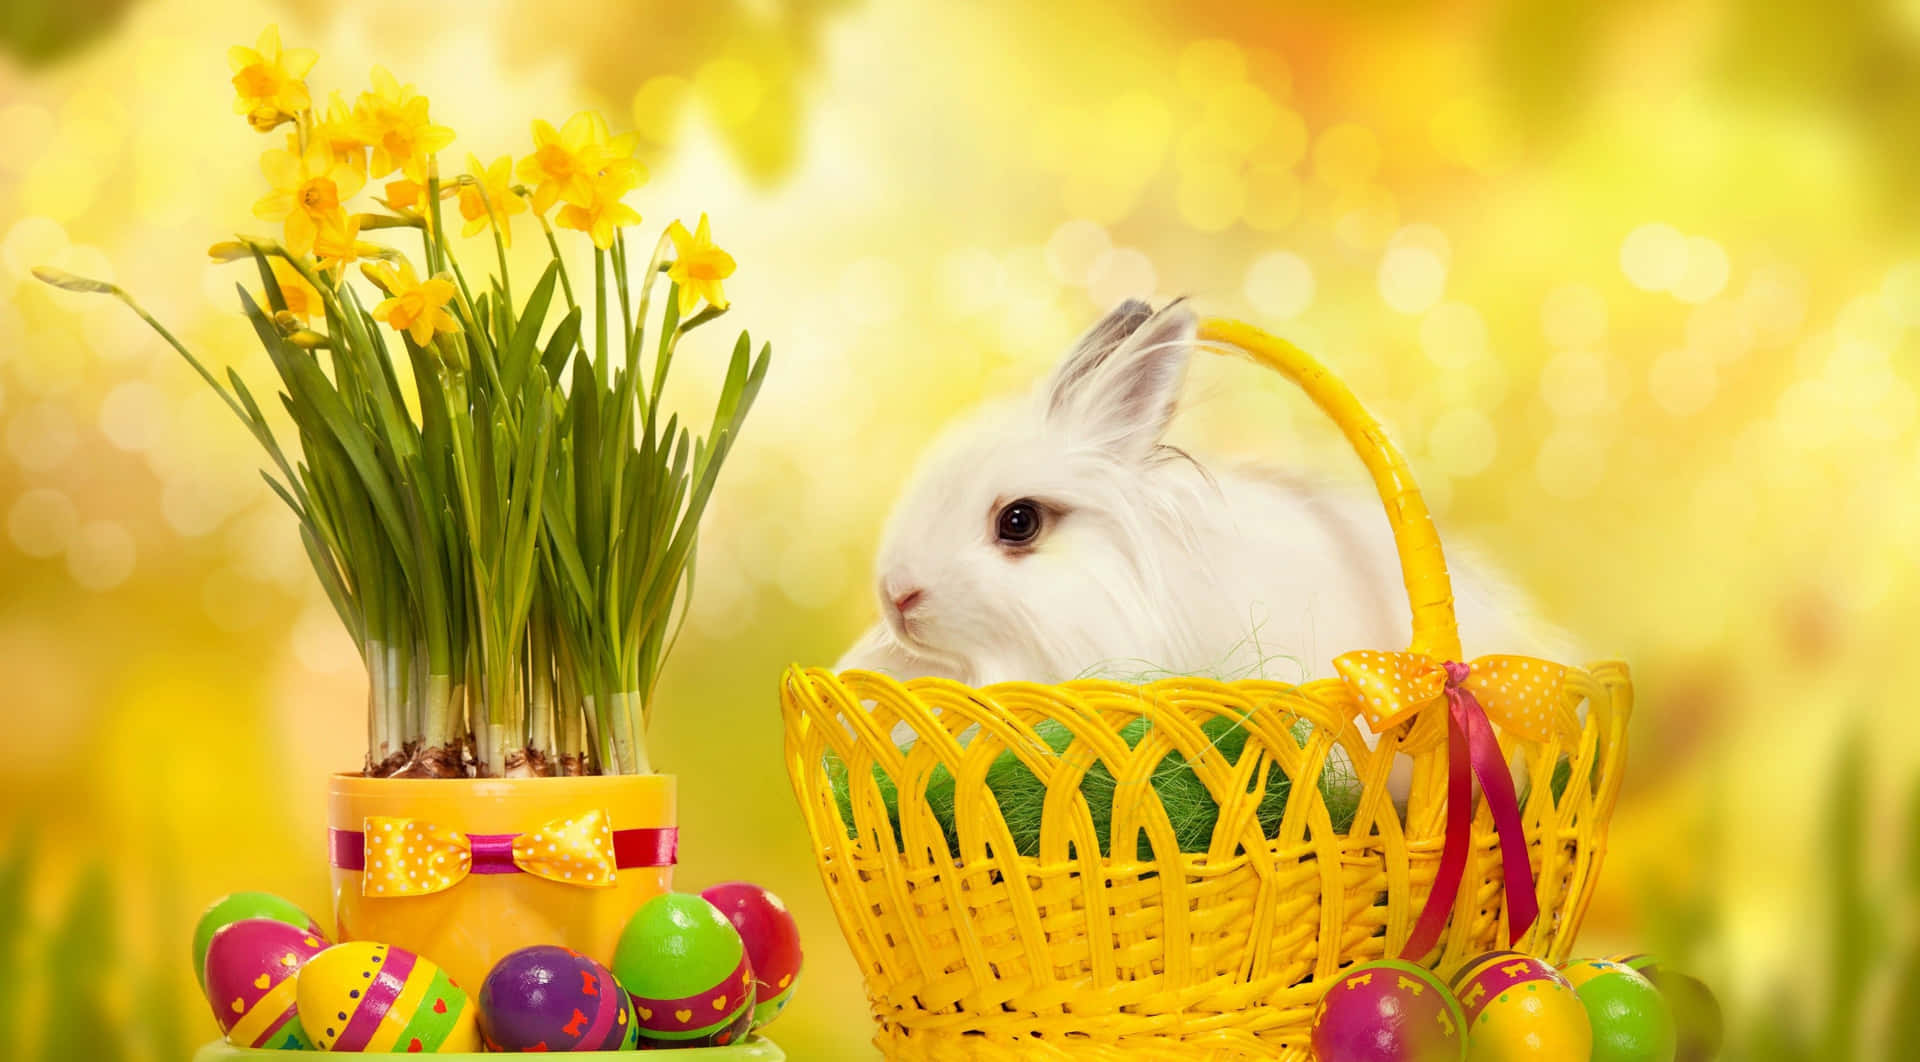 Easter Bunny Hopping On A Serene Spring Morning